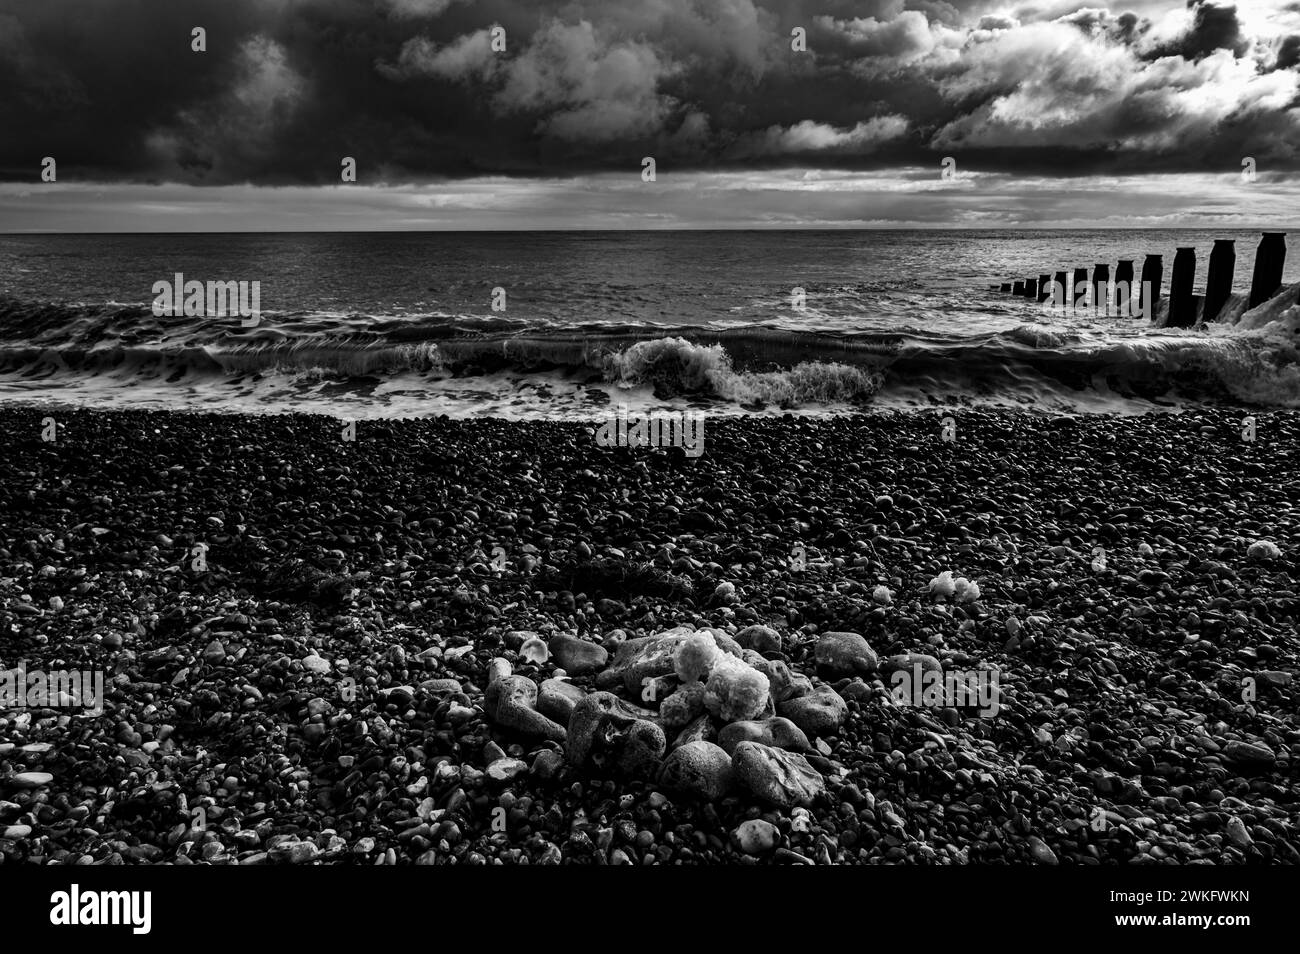 Éponge de mer reposant sur la plage dans un jour nuageux d'hiver Banque D'Images